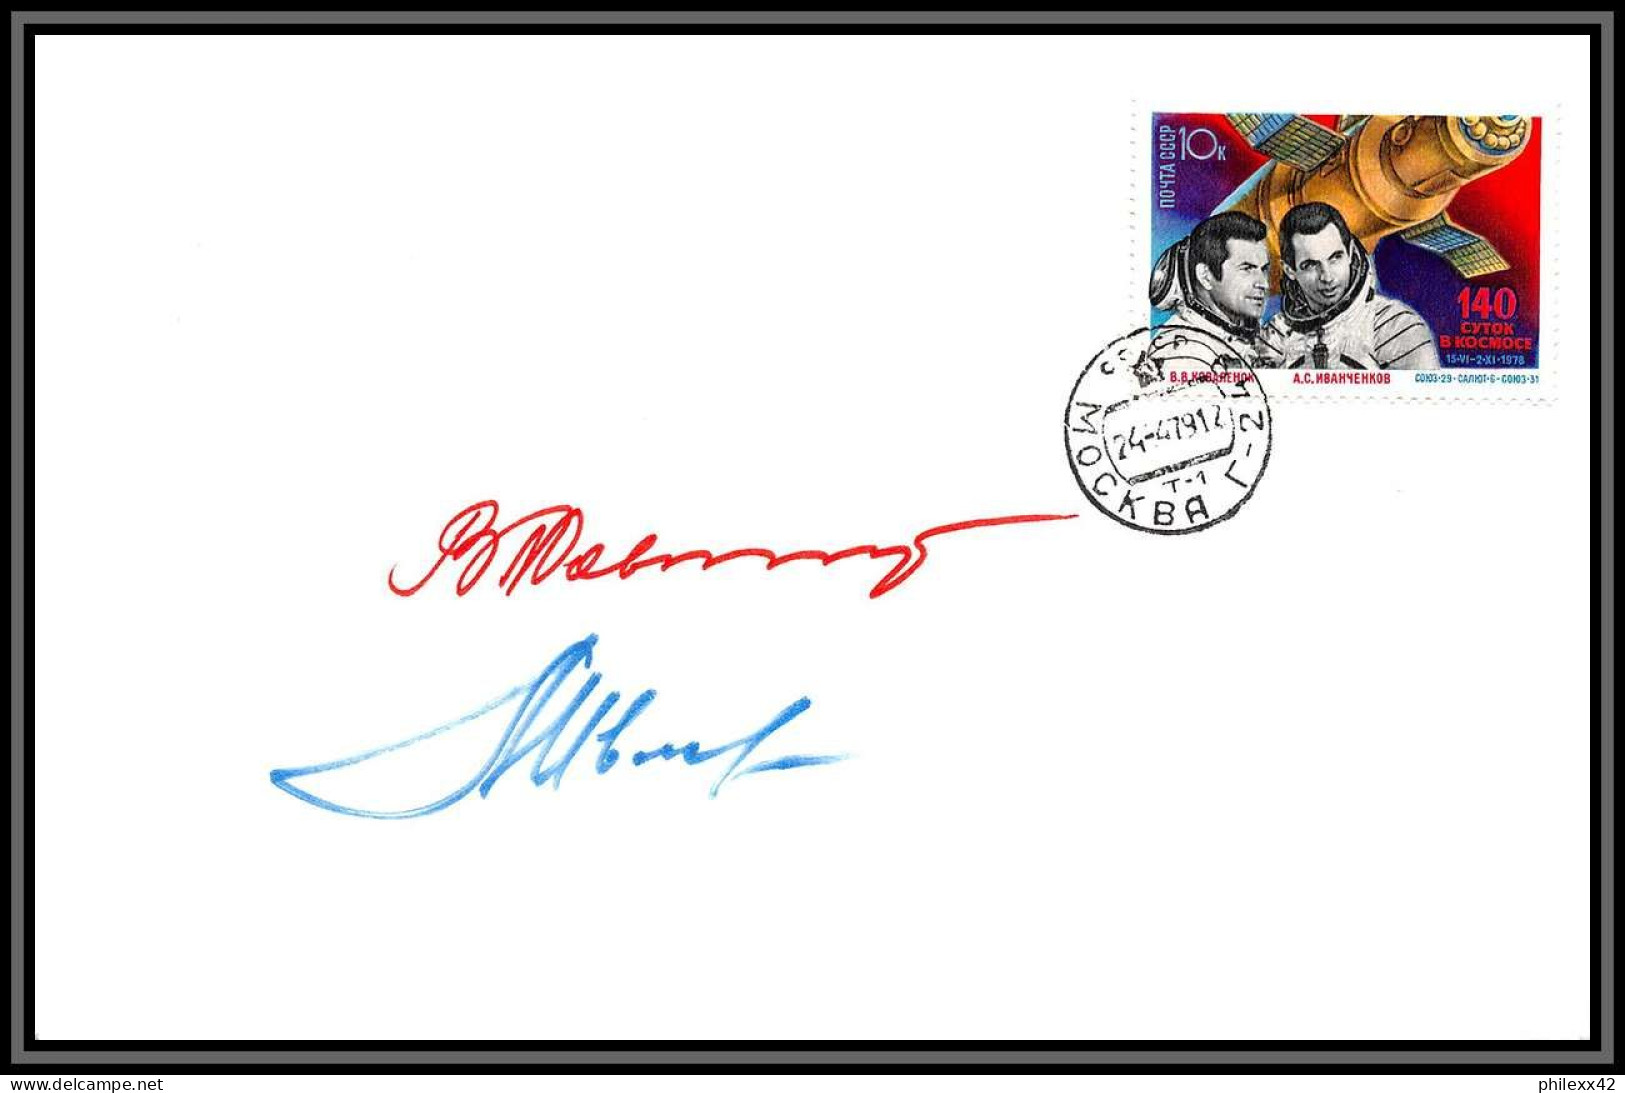 3500X Espace Space Lettre Cover Signé Signed Autograph Ivanchenkov Cosmonauts Russia Urss USSR 24/4/1979 Soyuz Soyouz 31 - Rusland En USSR